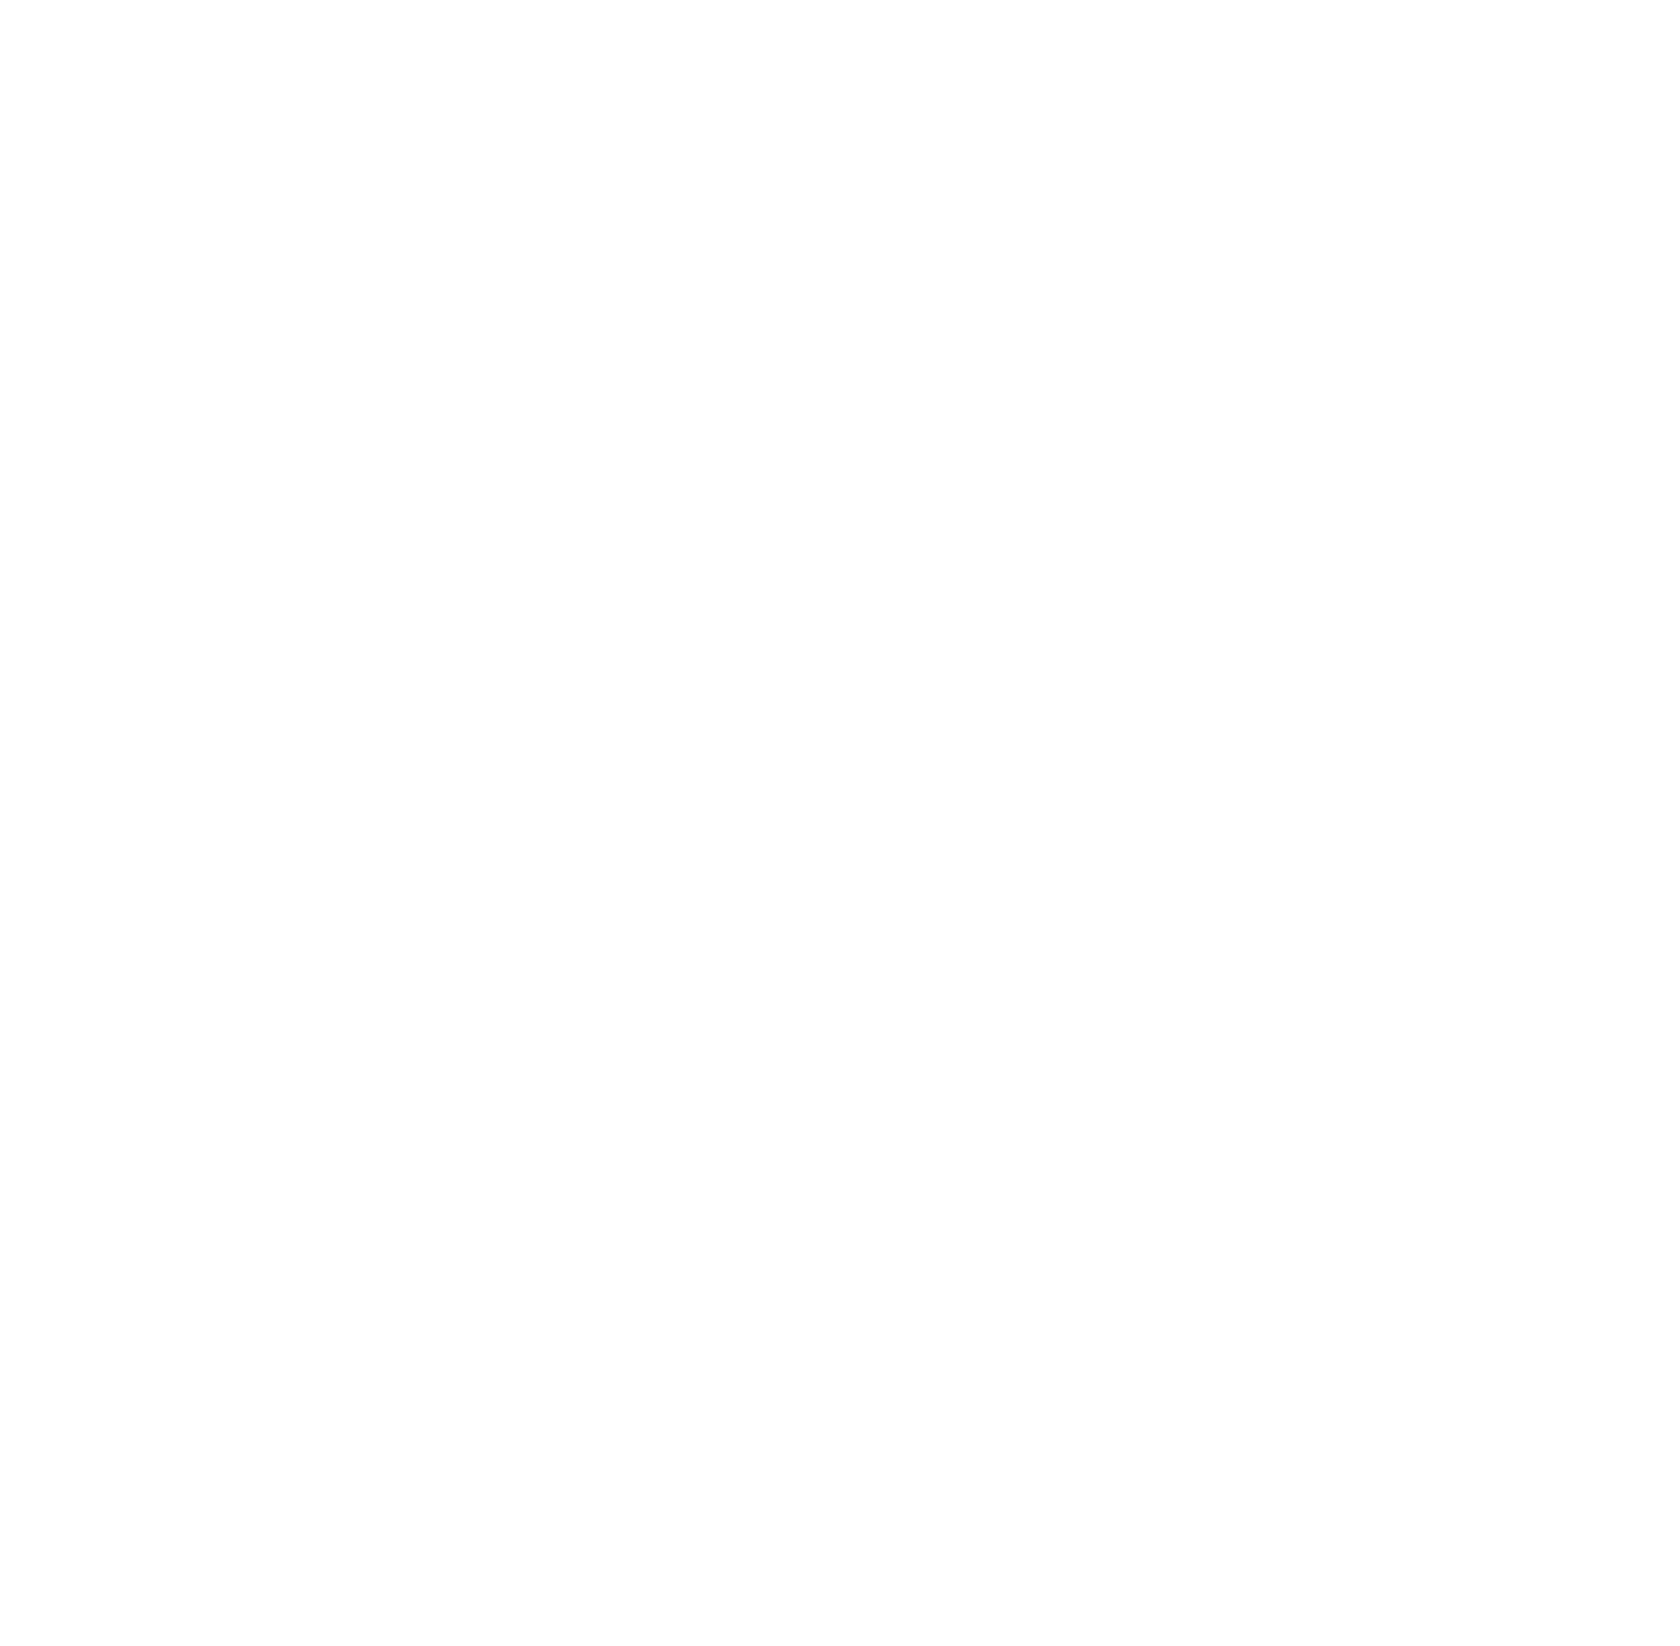 Картина в смешанной технике с применением имитации сусального золота, потали, художника Владимира Соловьёва по мотивам картины Жана-Франсуа Милле